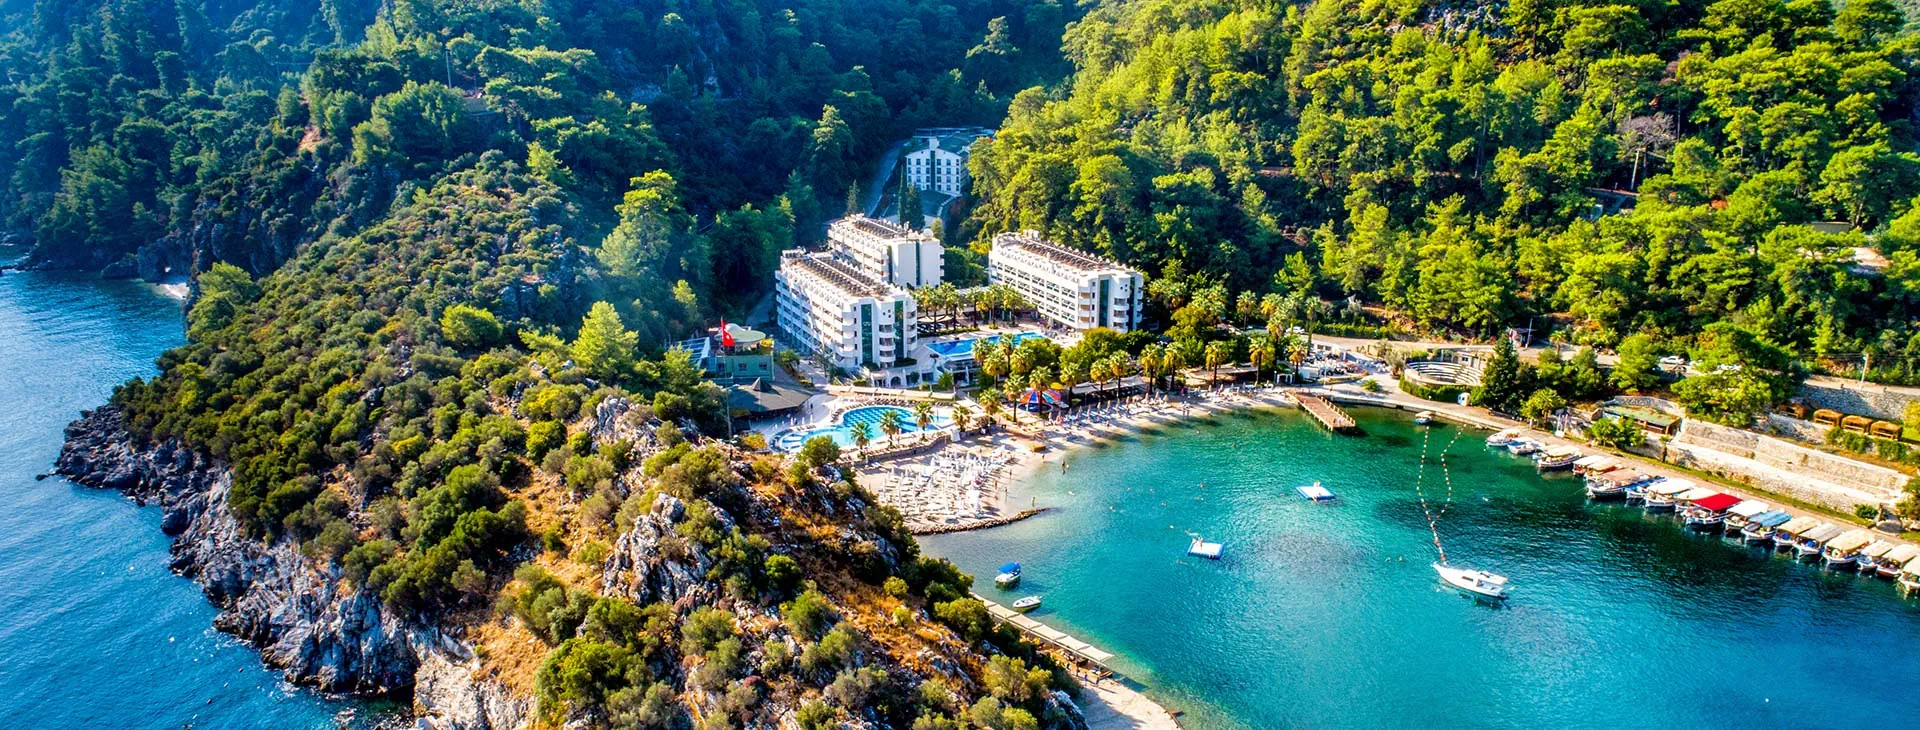 Turcja Marmaris Turunç Turunc Resort